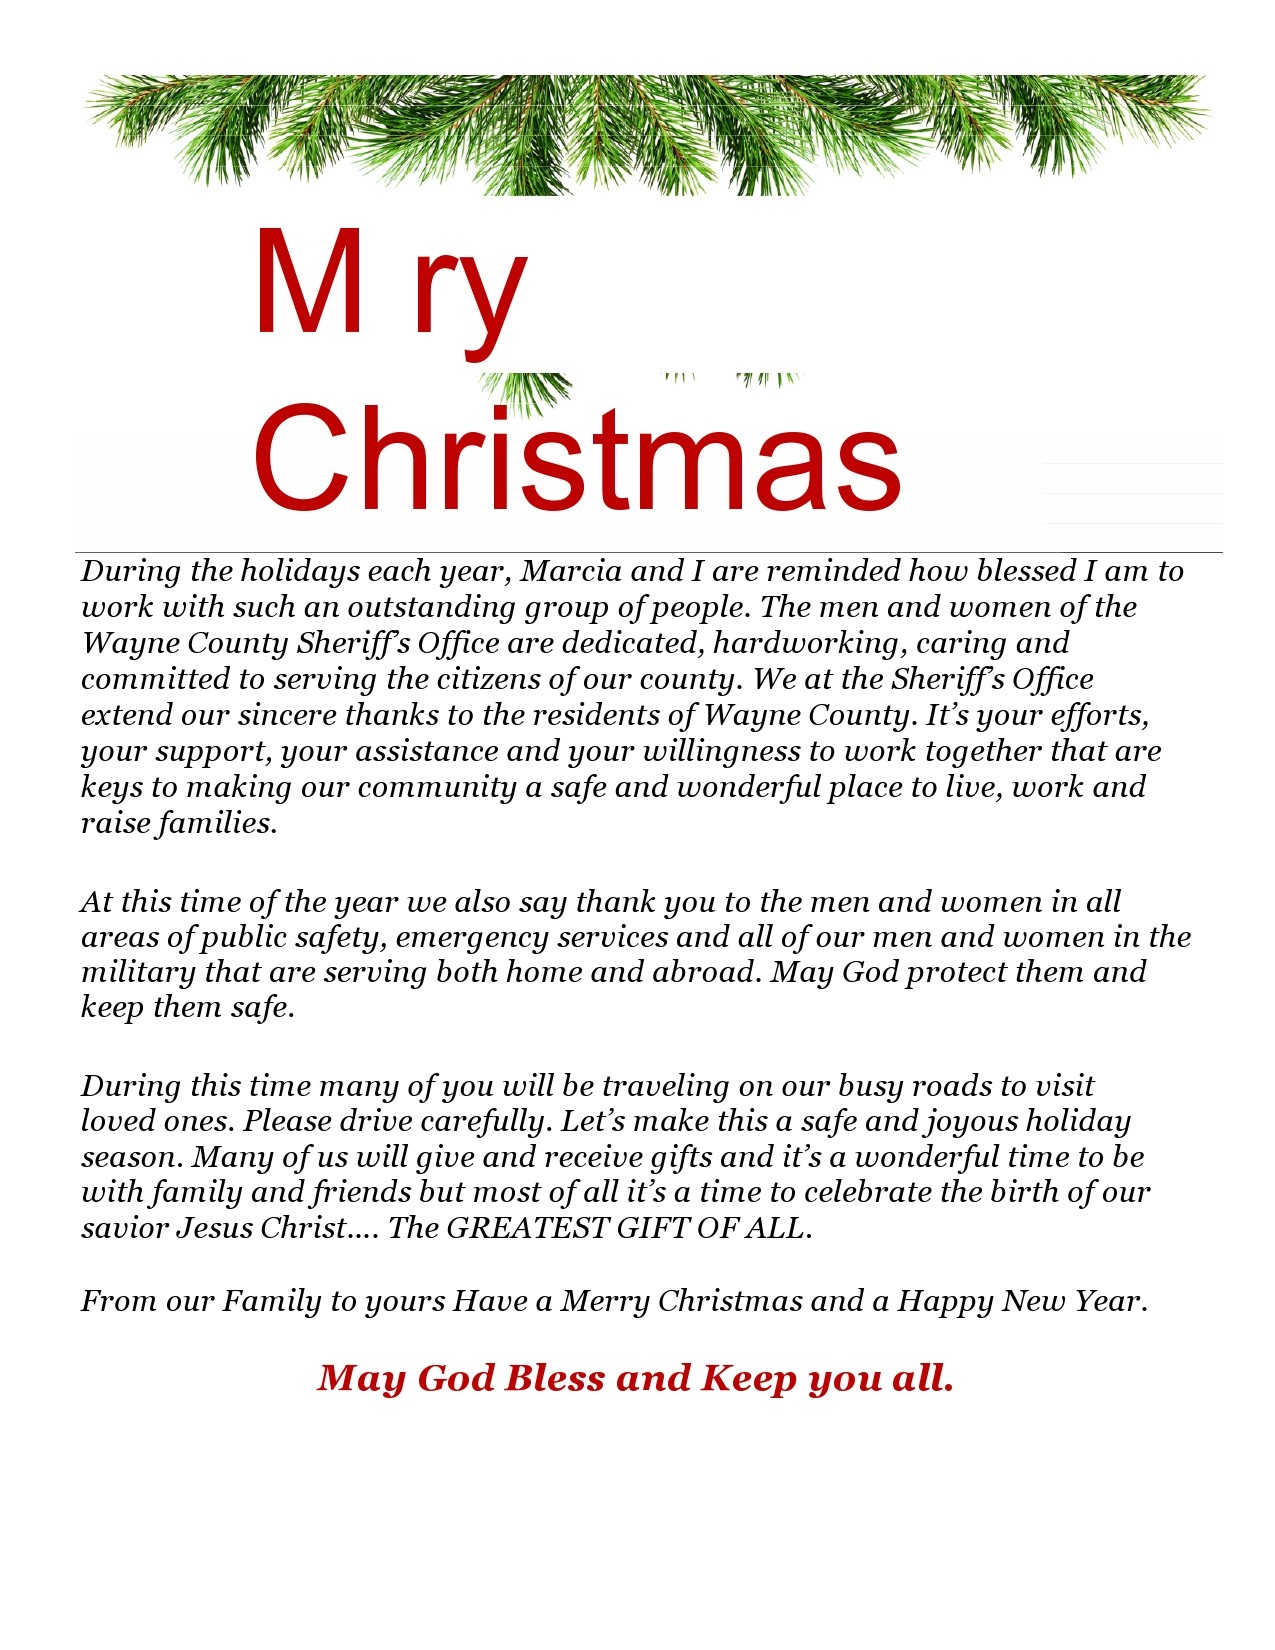 Printable Christmas Letter Templates - prntbl.concejomunicipaldechinu ...